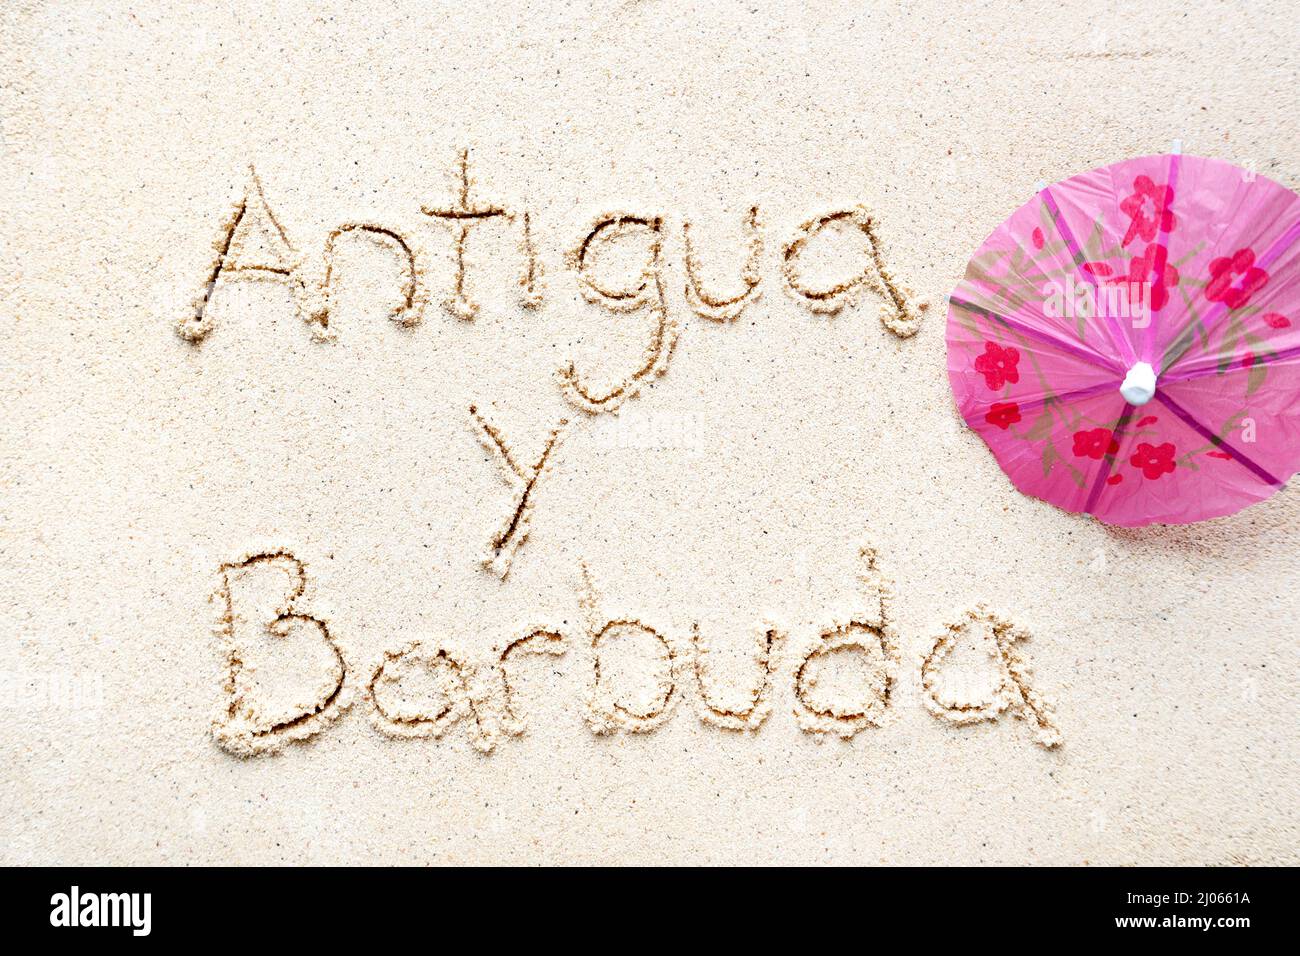 Scrivere a mano le parole 'Antigua y barbudaa' sulla sabbia della spiaggia Foto Stock